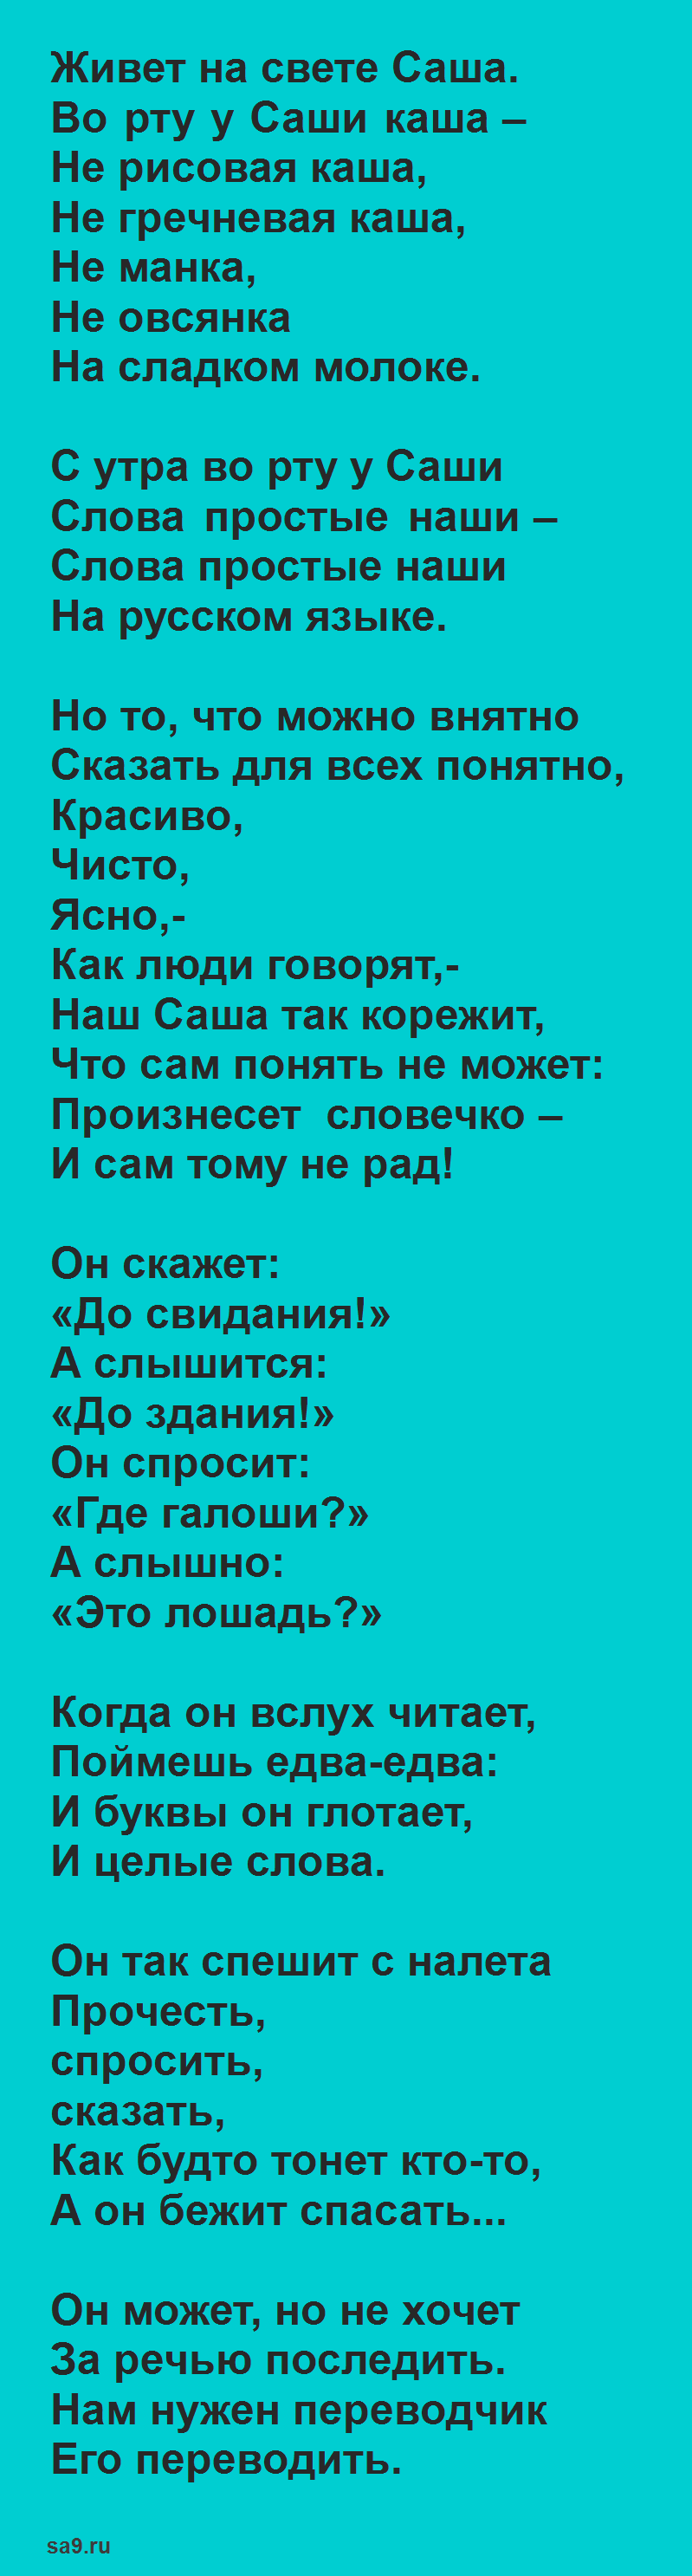 Сашина каша, Михалков стихи для детей 1 класса